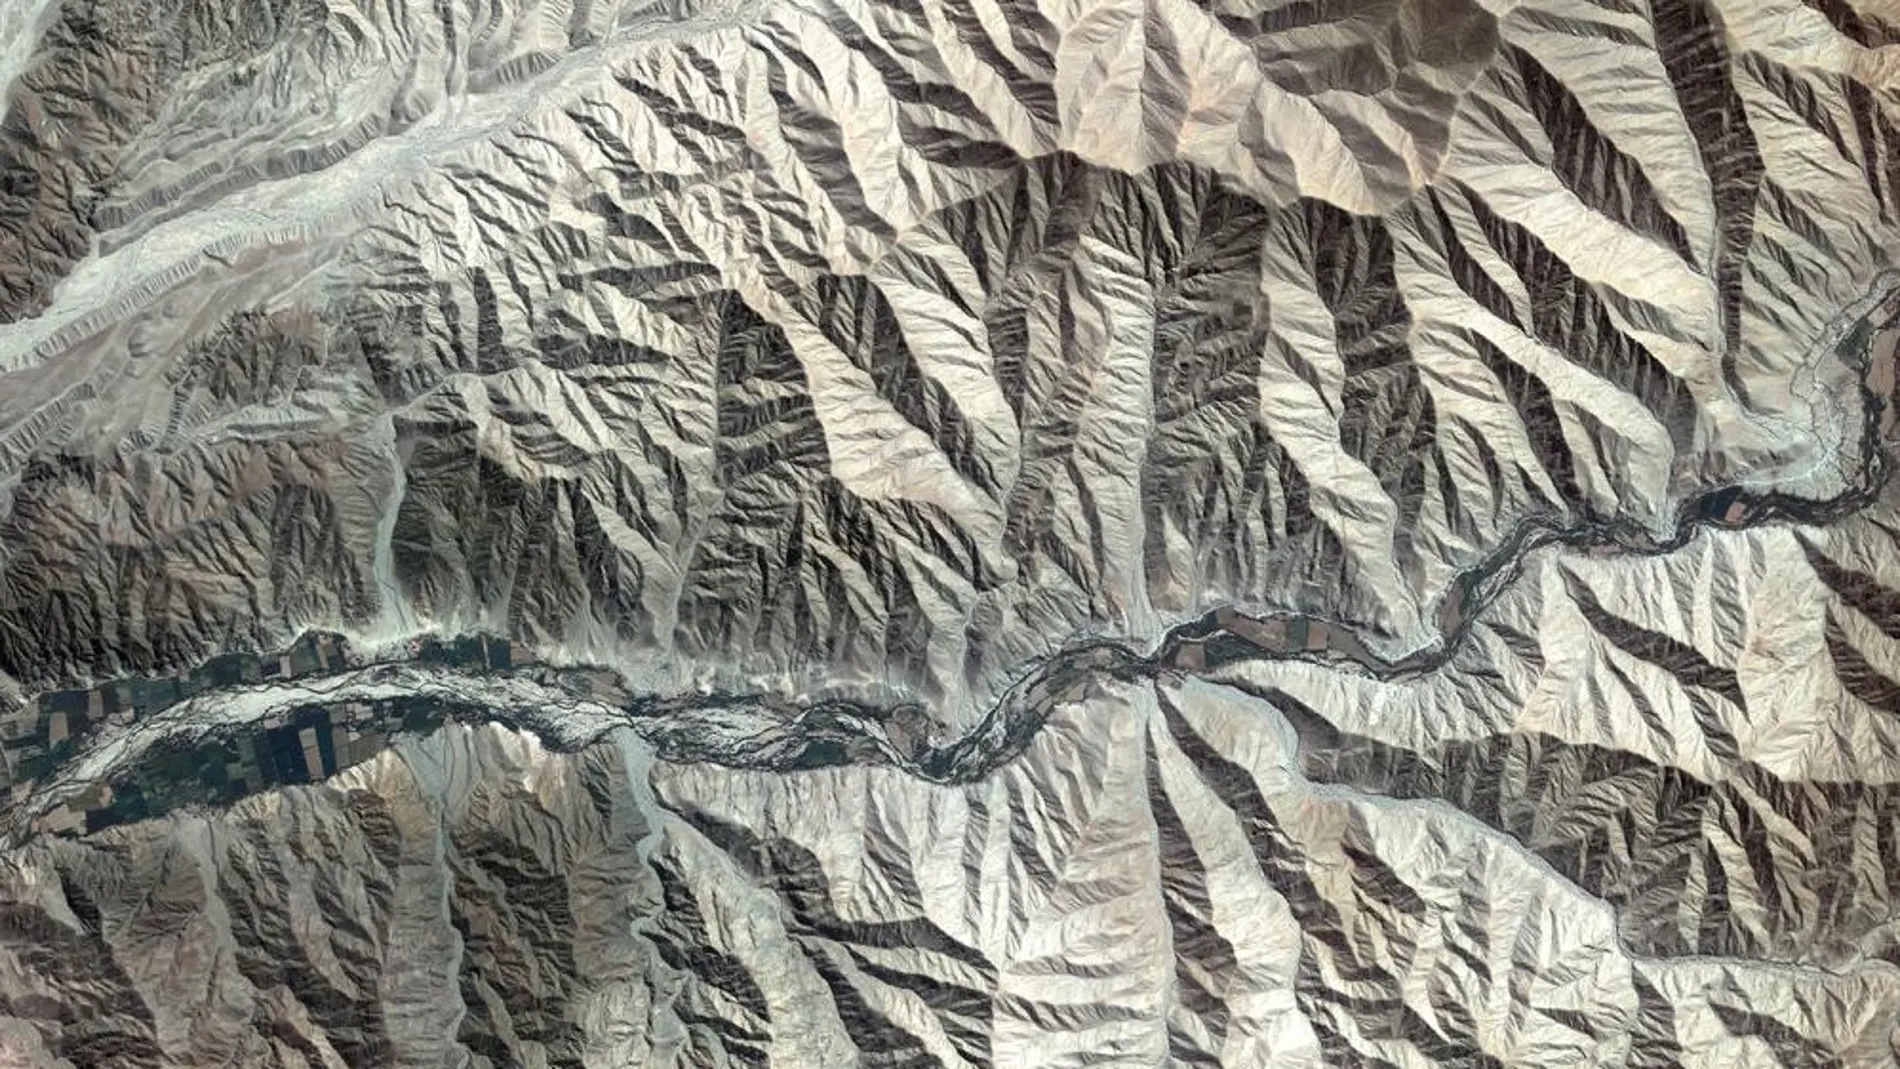 La cordillera de los Andes, desde el espacio